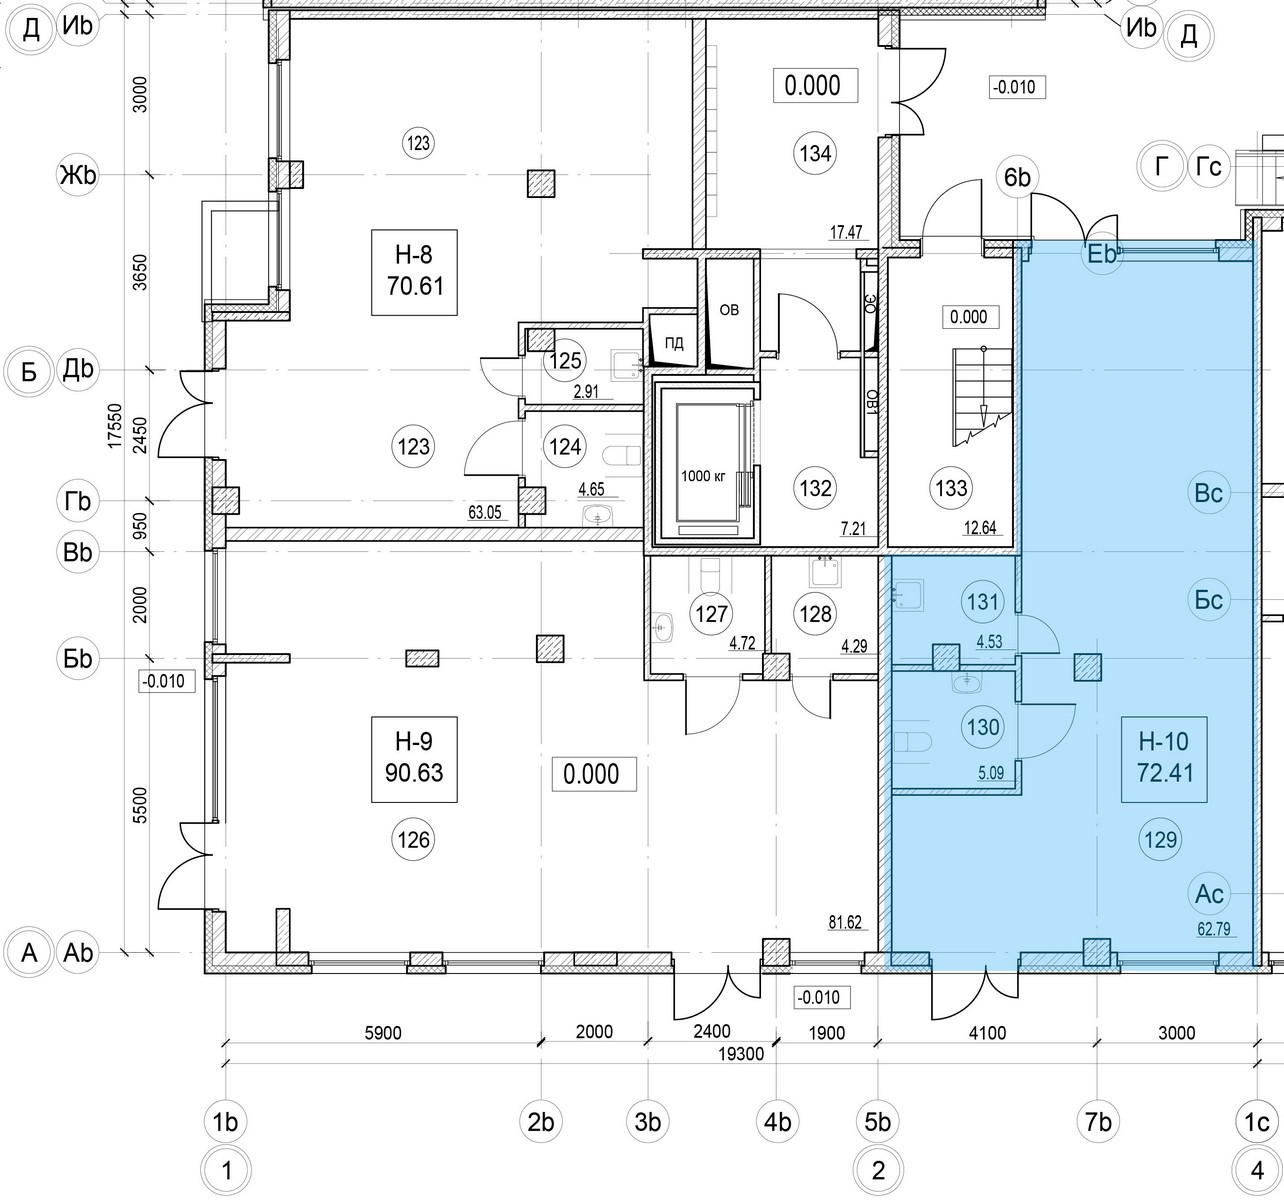 Помещение, 72.41 м² в ЖК "ID Murino II" - планировка, фото №1